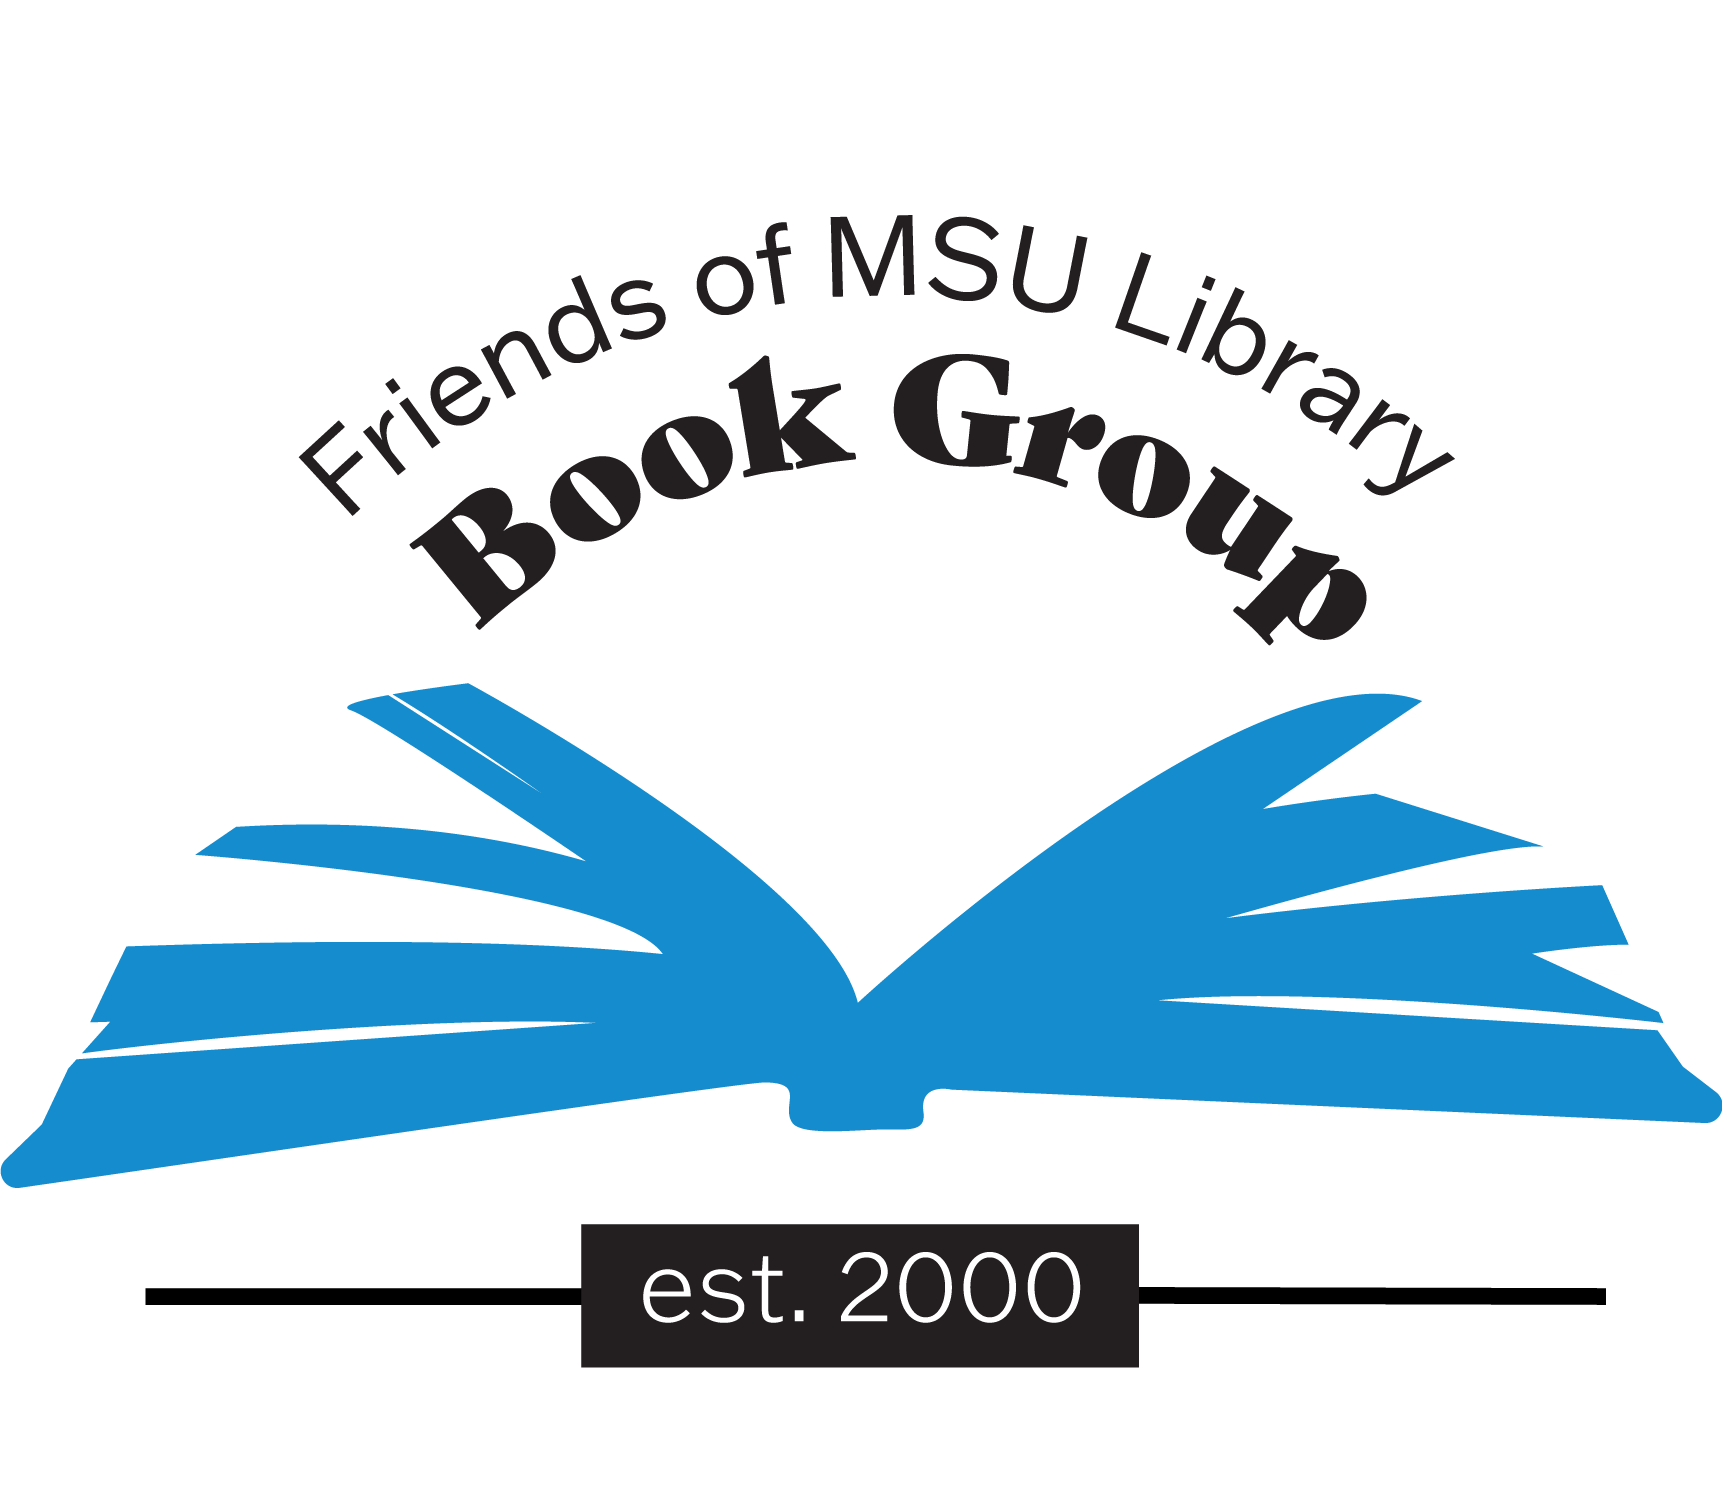 Book group logo